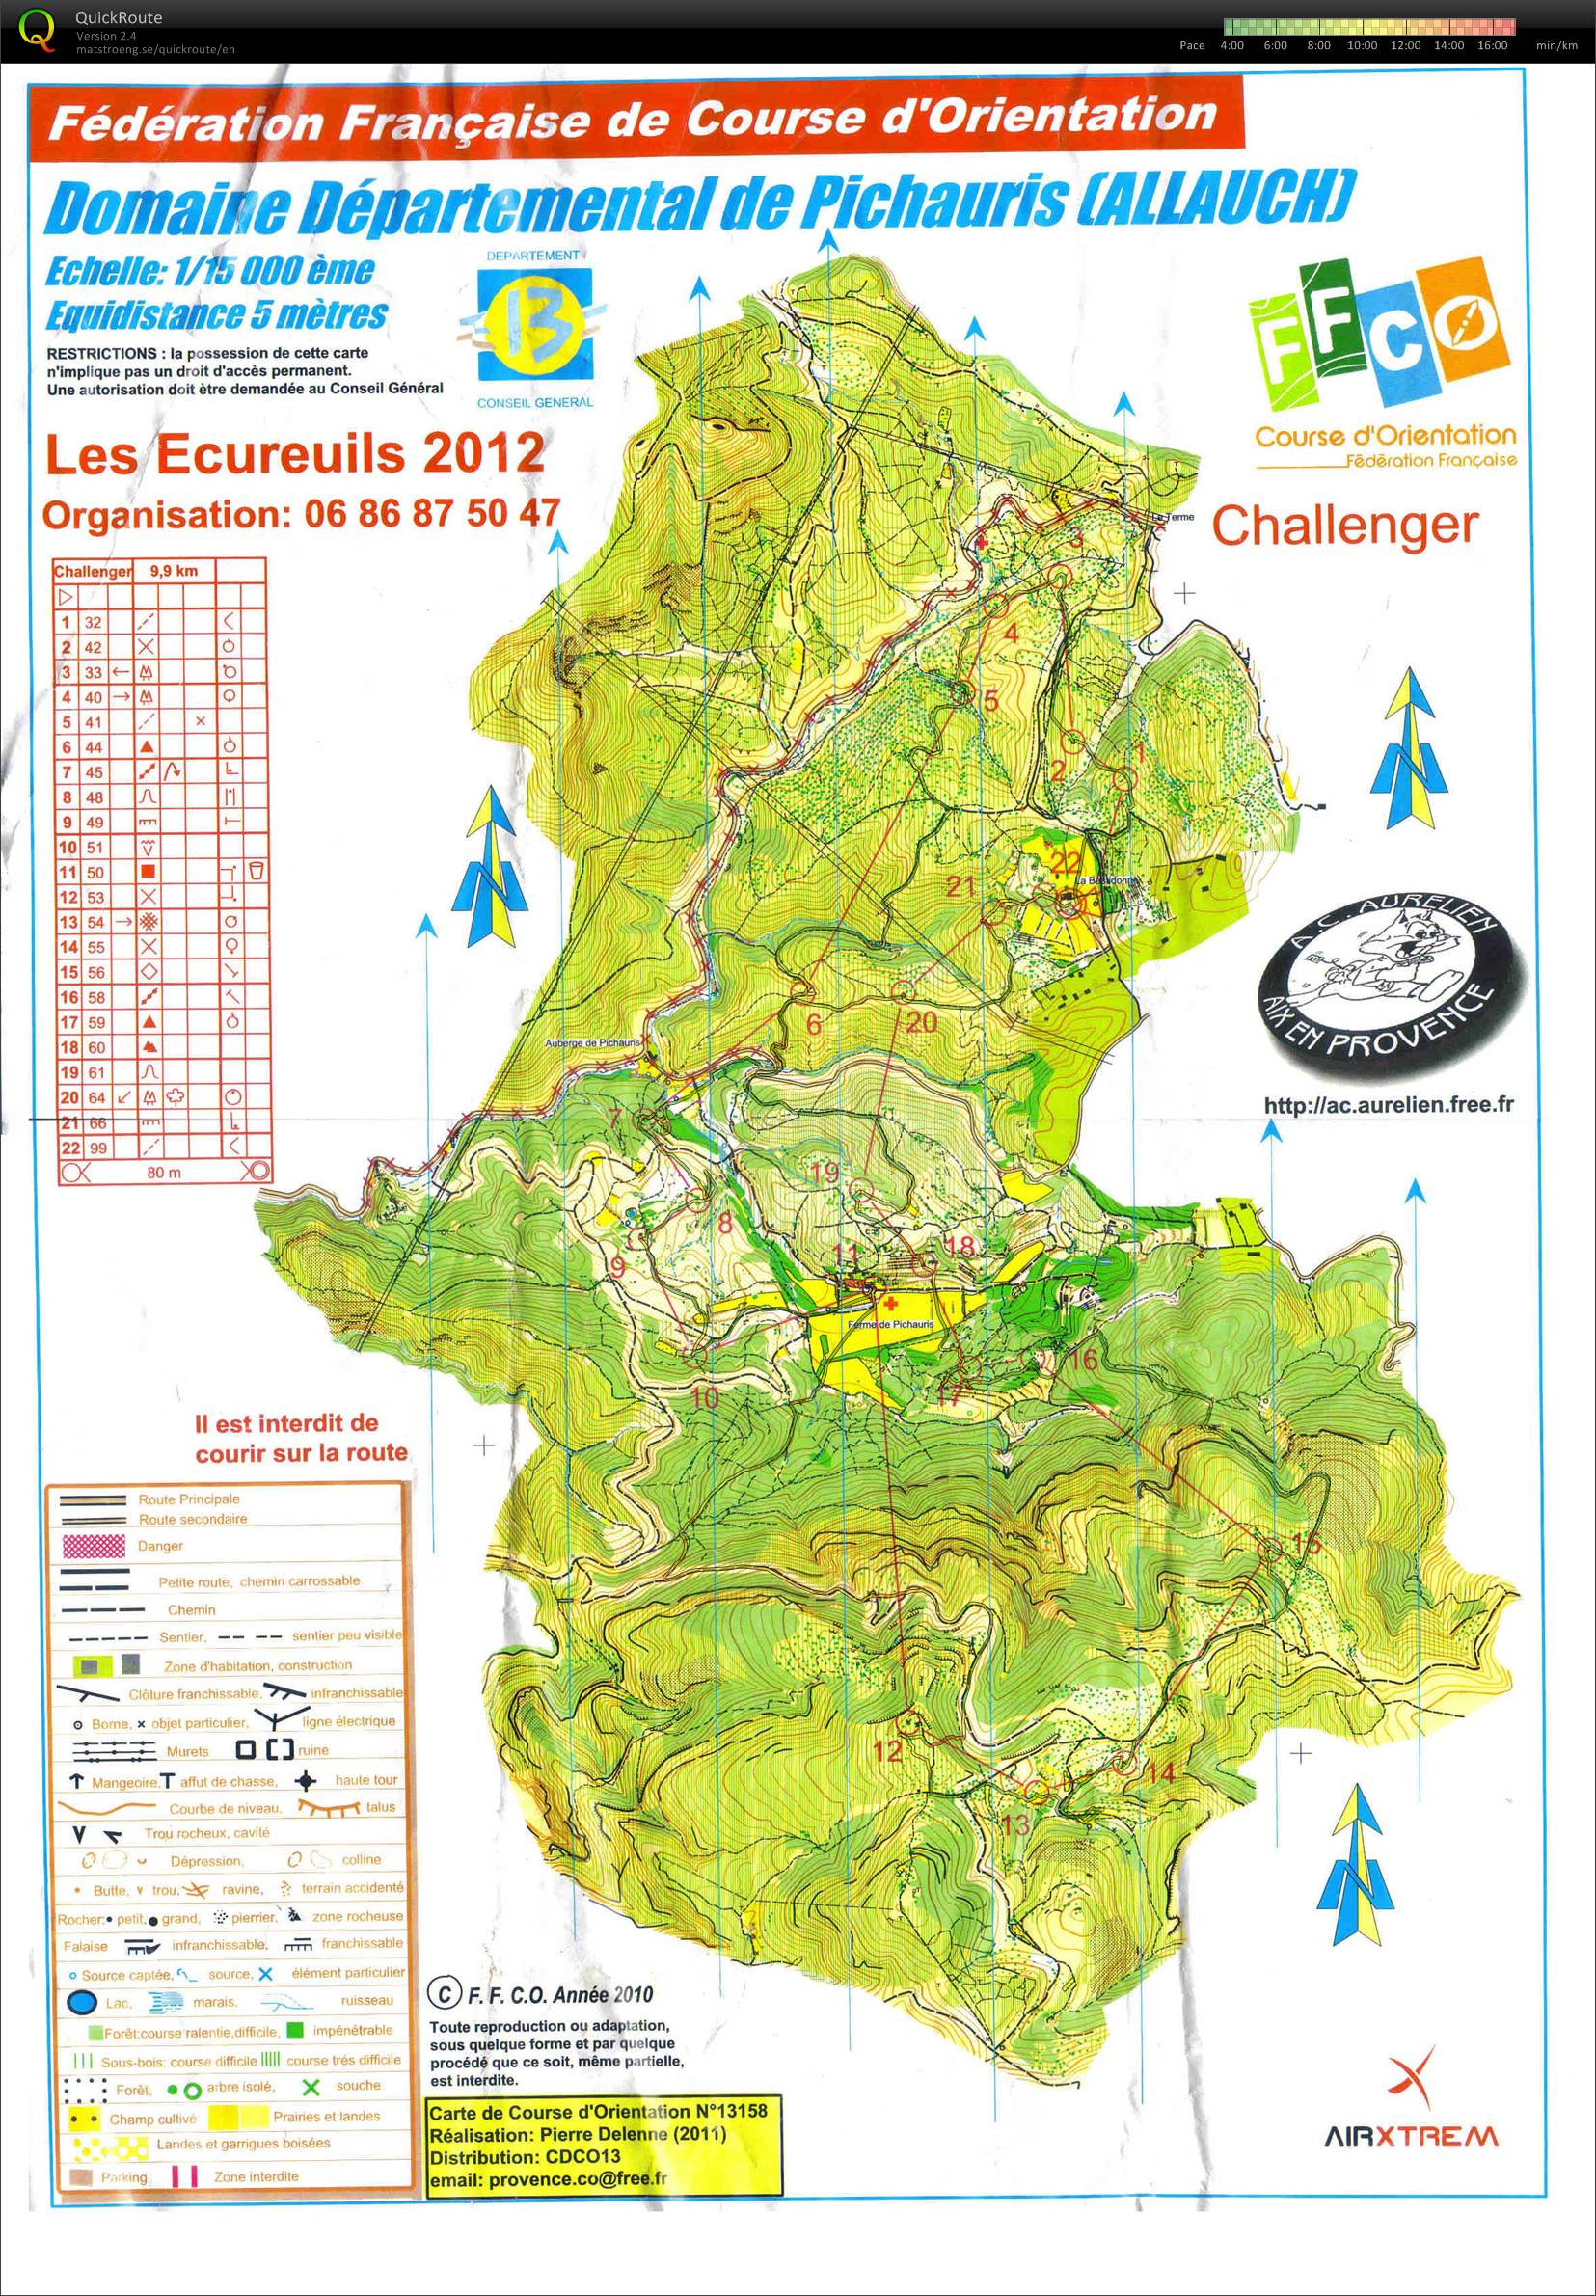 Les Ecureuils - Challenger (29/01/2012)